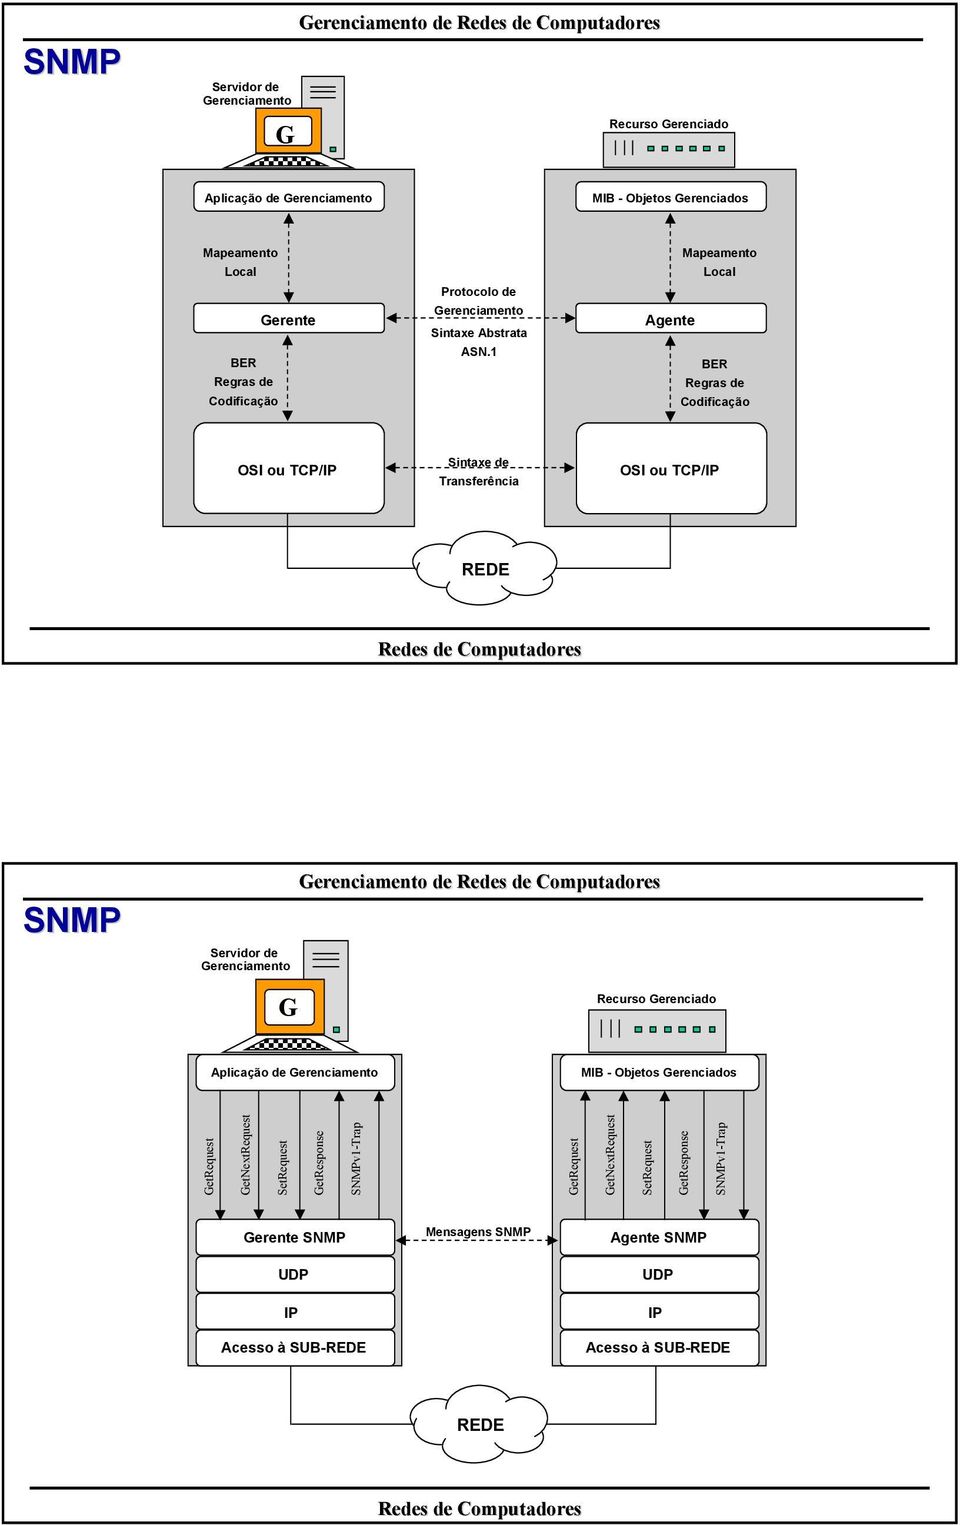 1 Mapeamento Local Agente BER Regras Codificação OSI ou TCP/IP Sintaxe Transferência OSI ou TCP/IP REDE SNMP Servidor Recurso